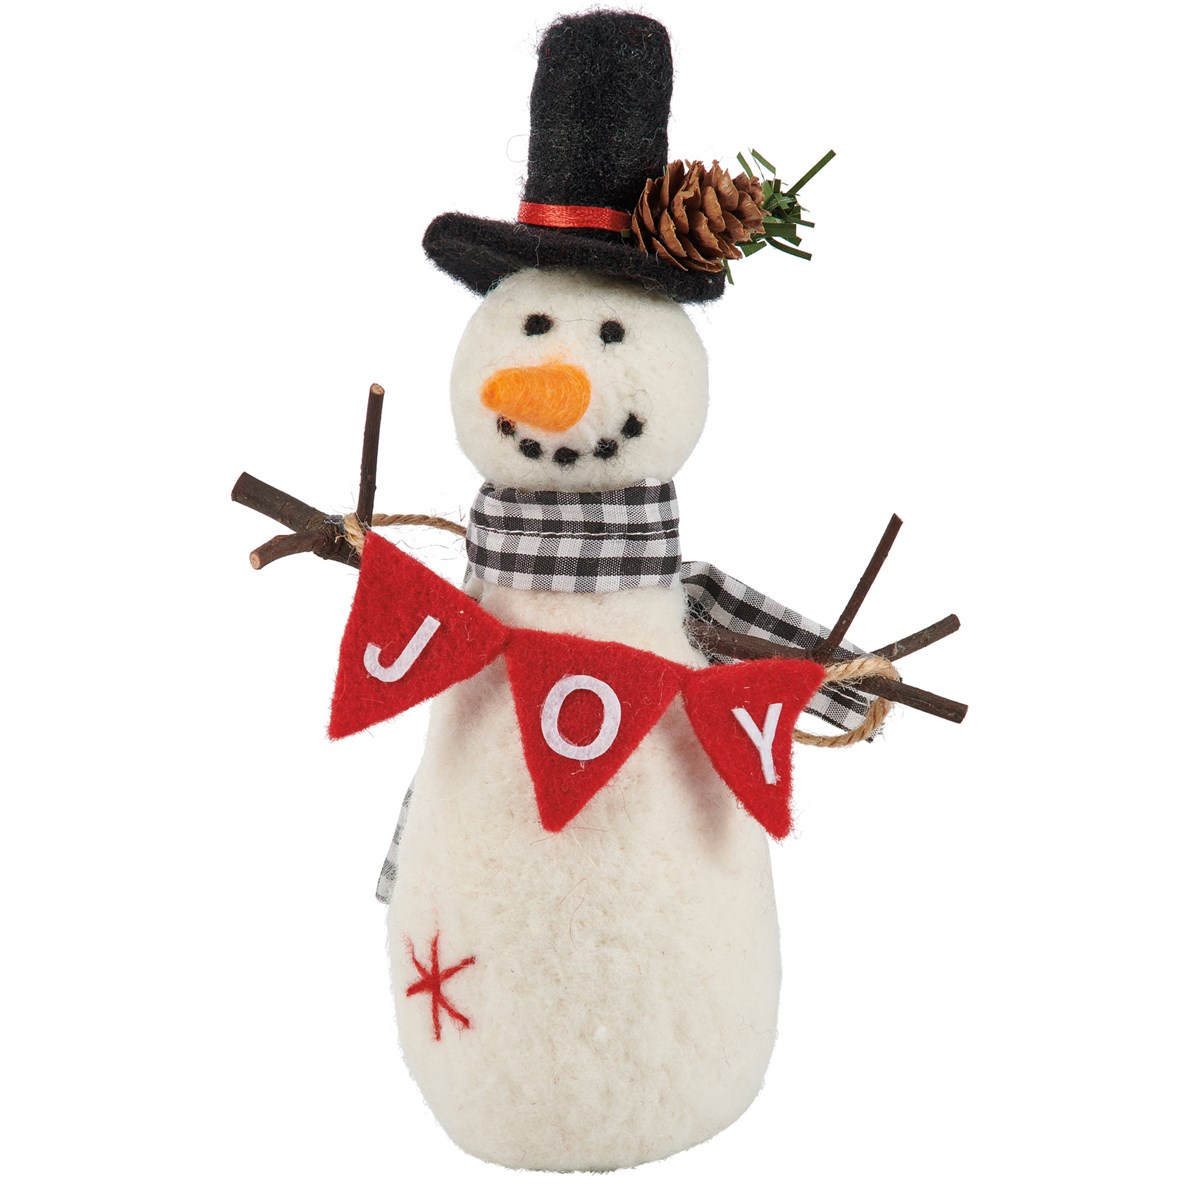 Snowman Joy Critter Set - Felt, Polyester, Plastic, Wood